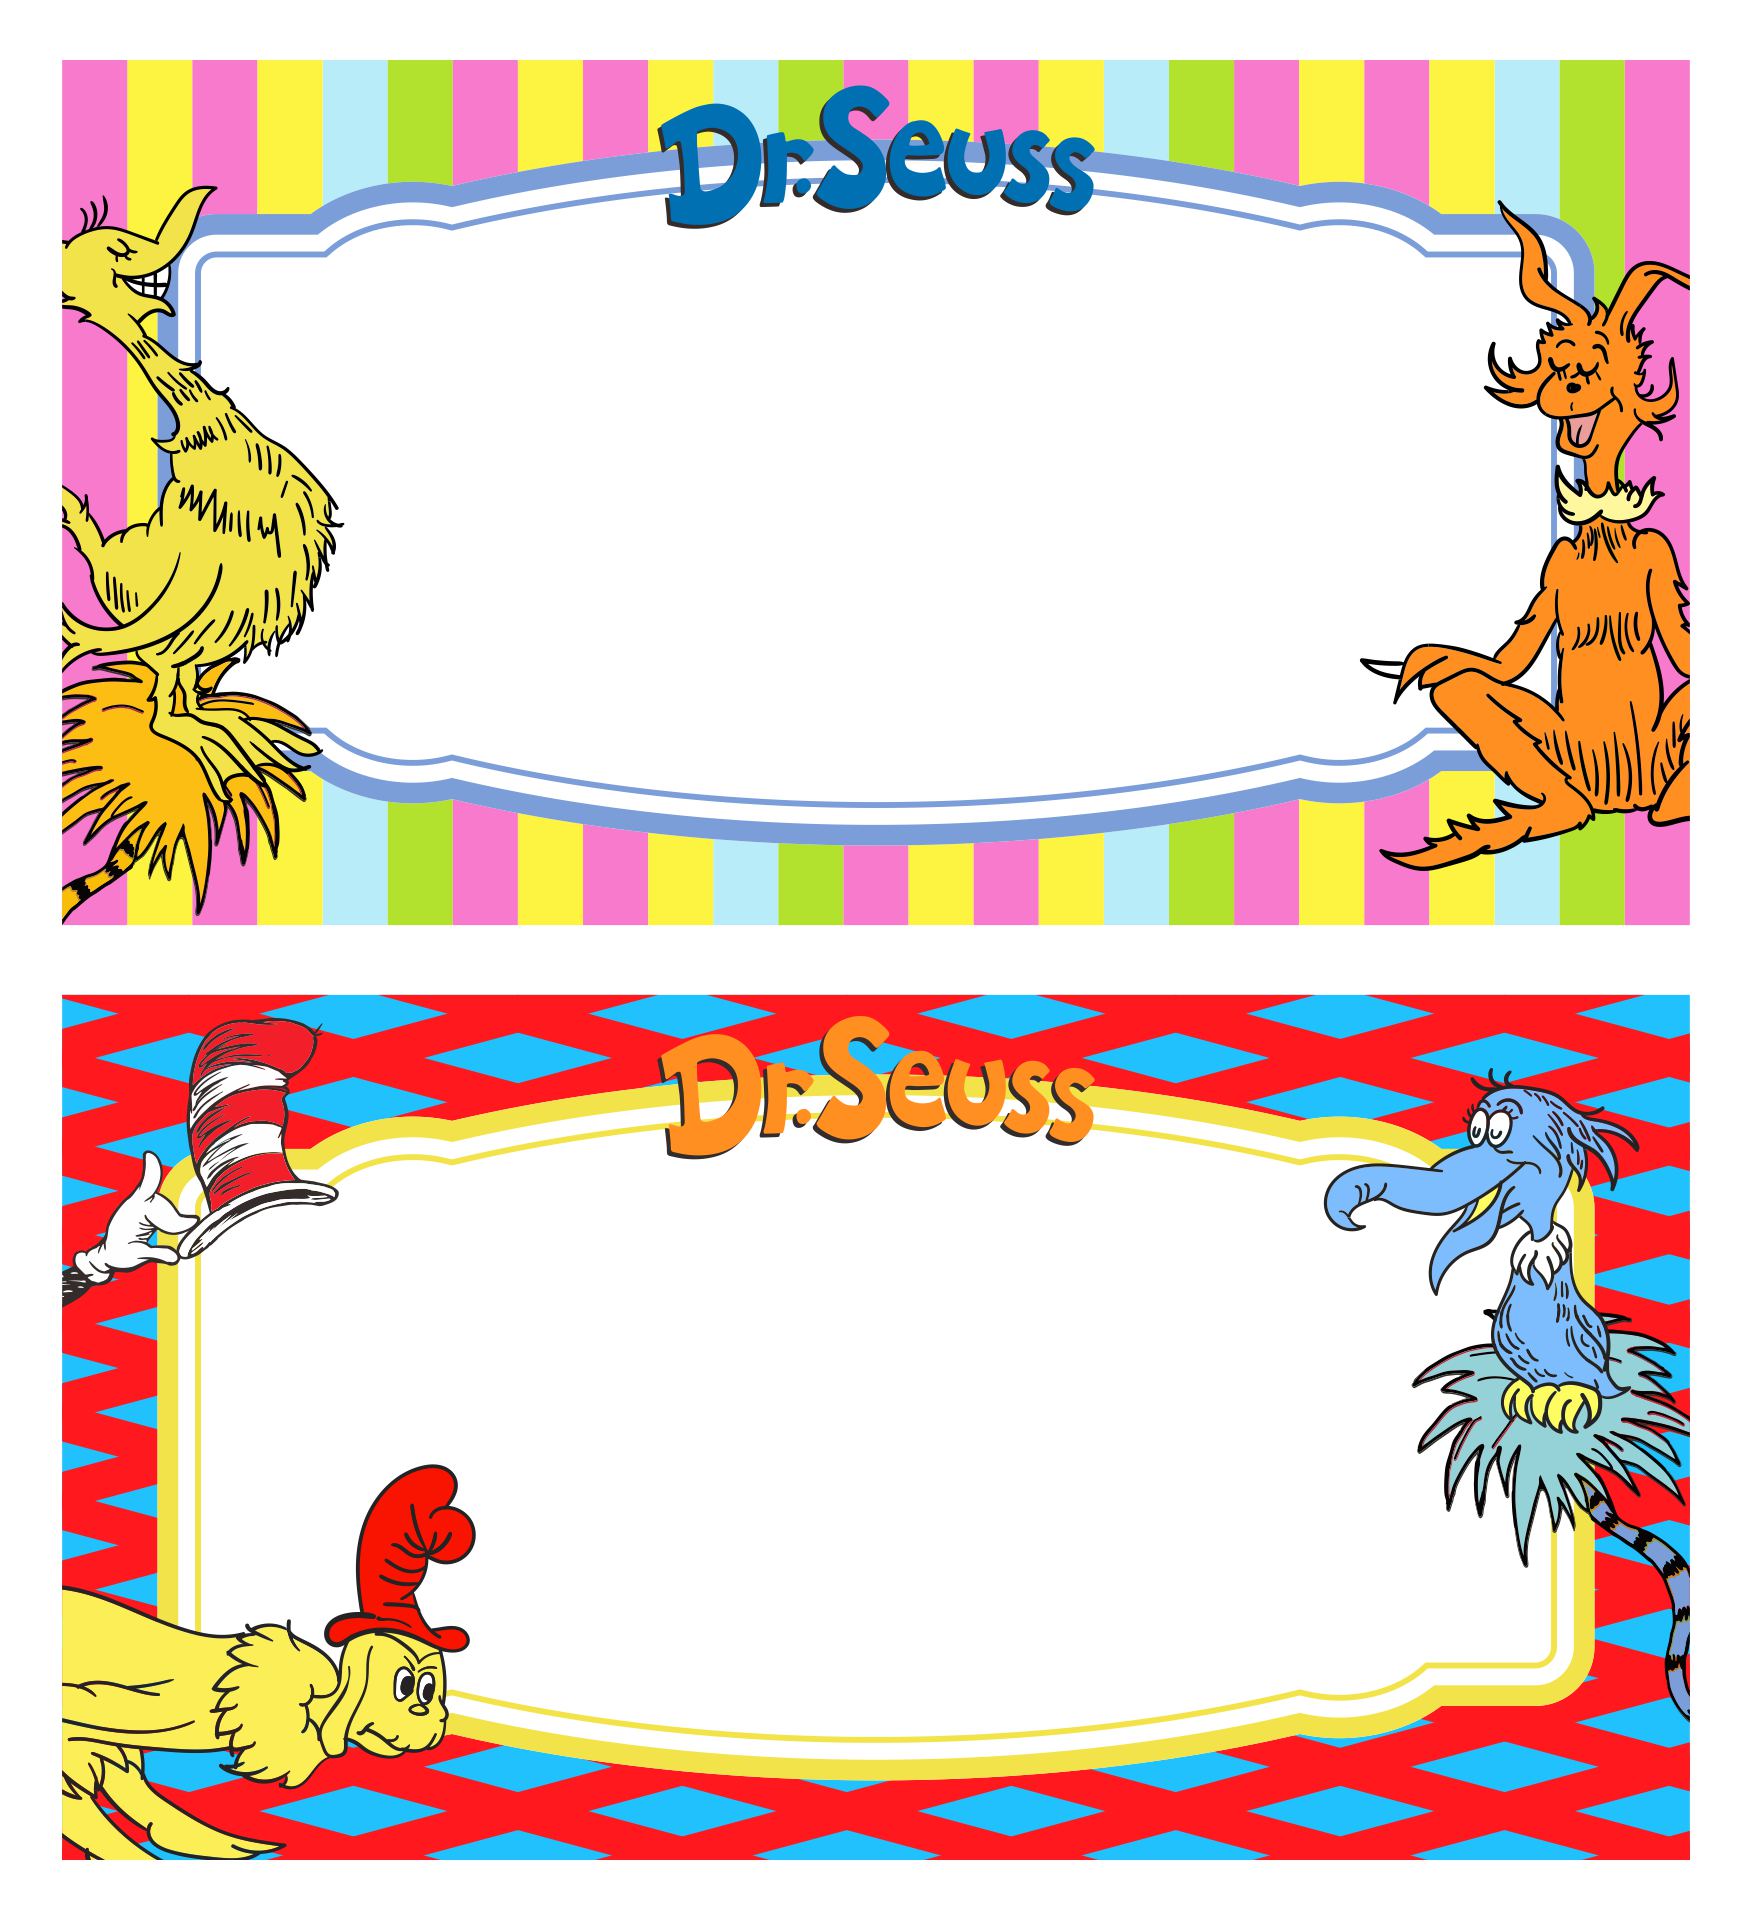 Dr. Seuss Label Stickers Border